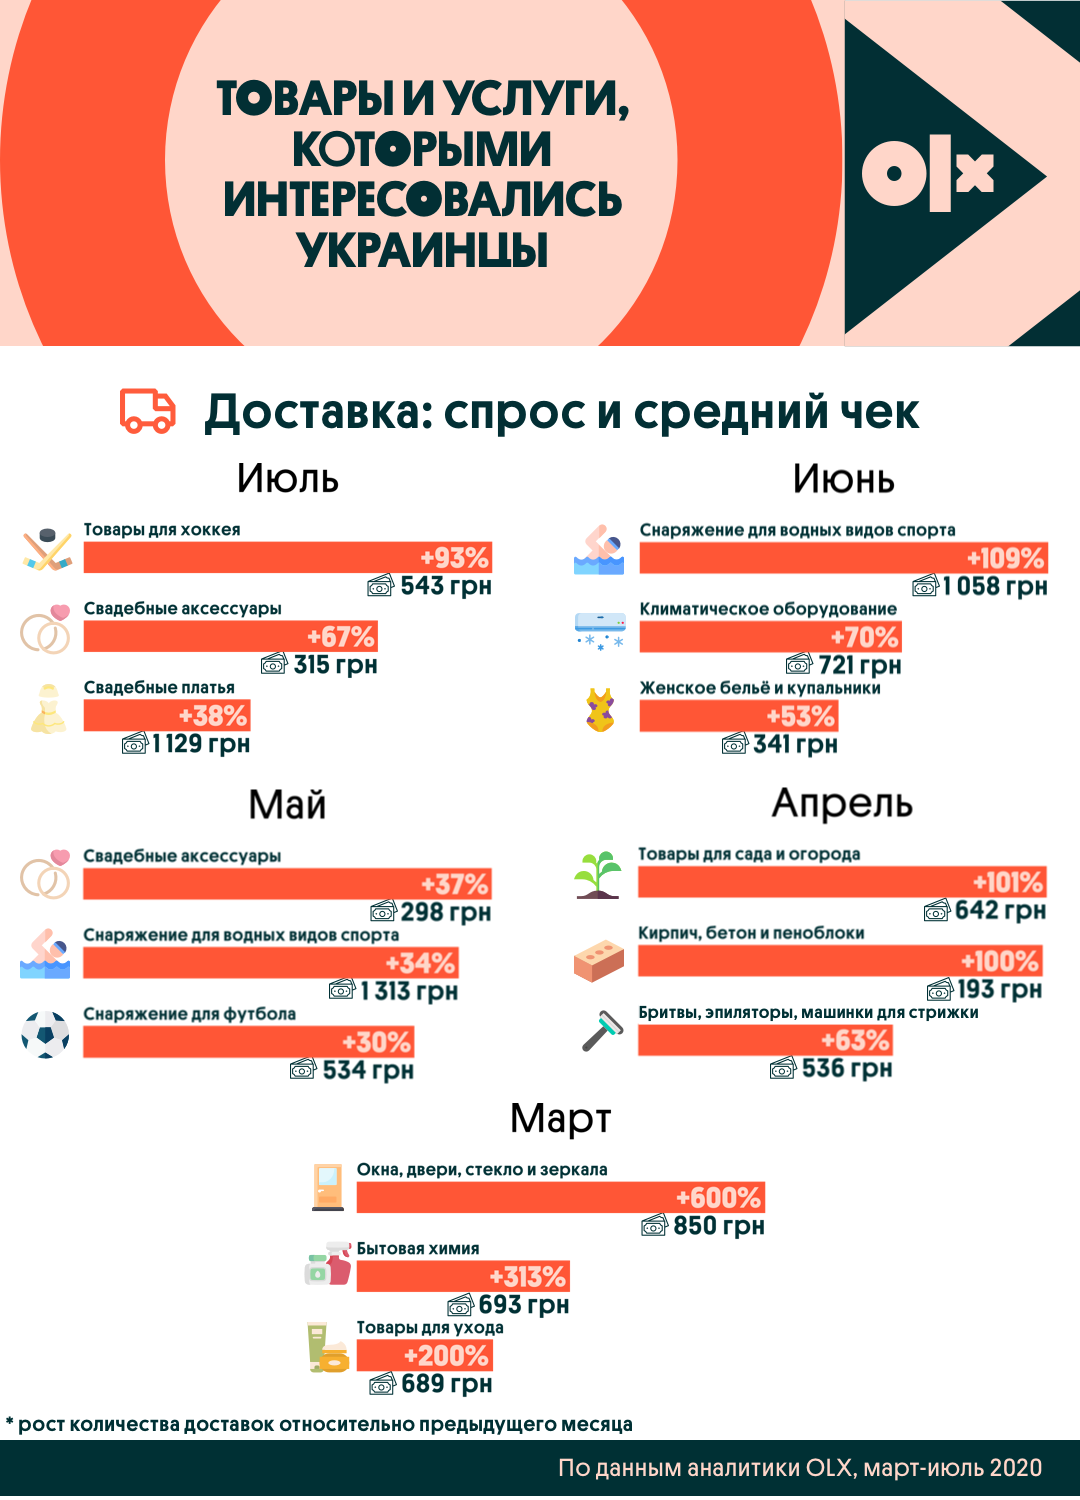 Купить хлебопечку и подстричься: какими товарами и услугами интересовались украинцы за последние полгода